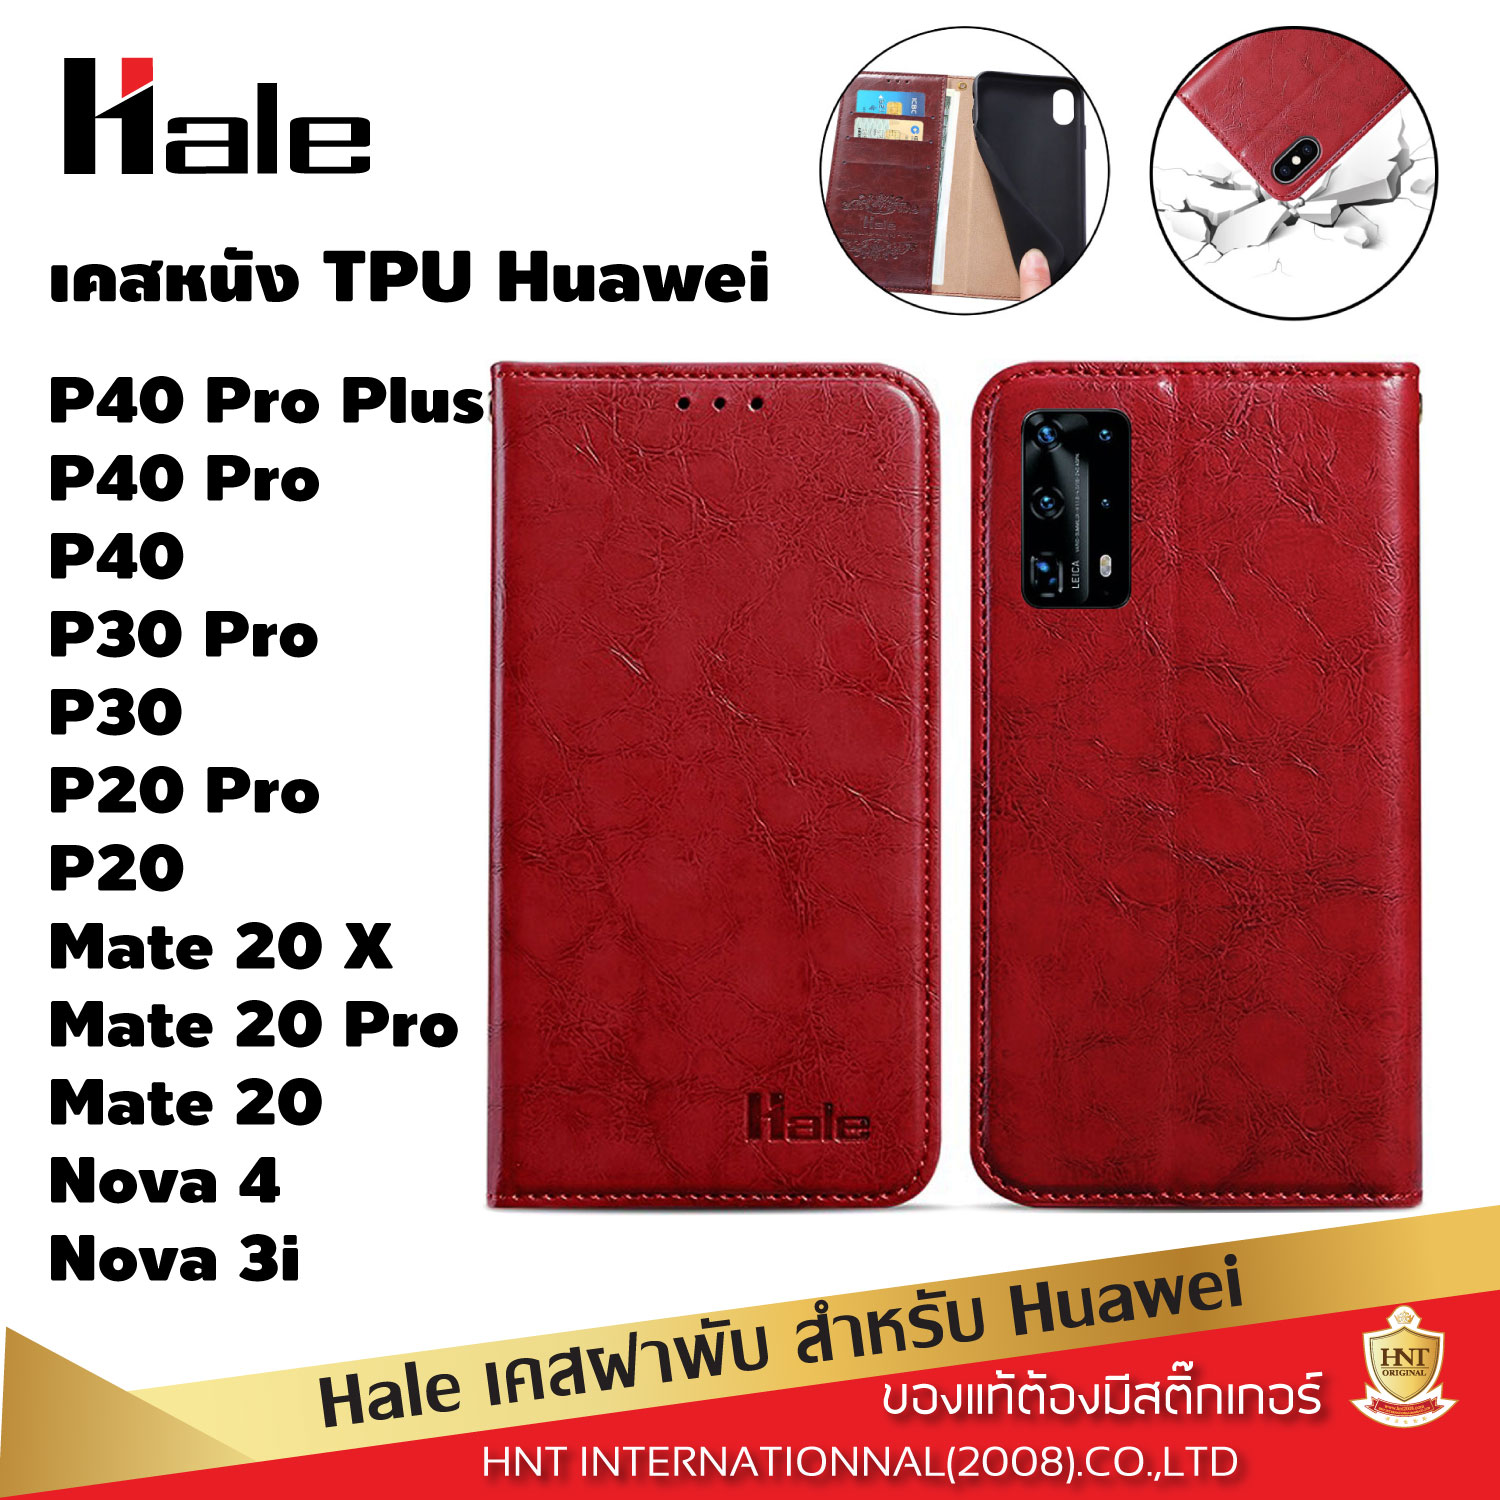 เคสฝาพับ Hale สำหรับ Huawei P40 Pro Plus, P40 Pro, P40, P30 Pro, P30, P20 pro, P20, Mate 20 X, Mate 20 pro, Mate 20, Nova 4, Nova 3i ใส่นามบัตรได้ กันกระแทก เคสหนัง เคสกันกระแทก เคส Case เคสโทรศัพท์ เคสมือถือ